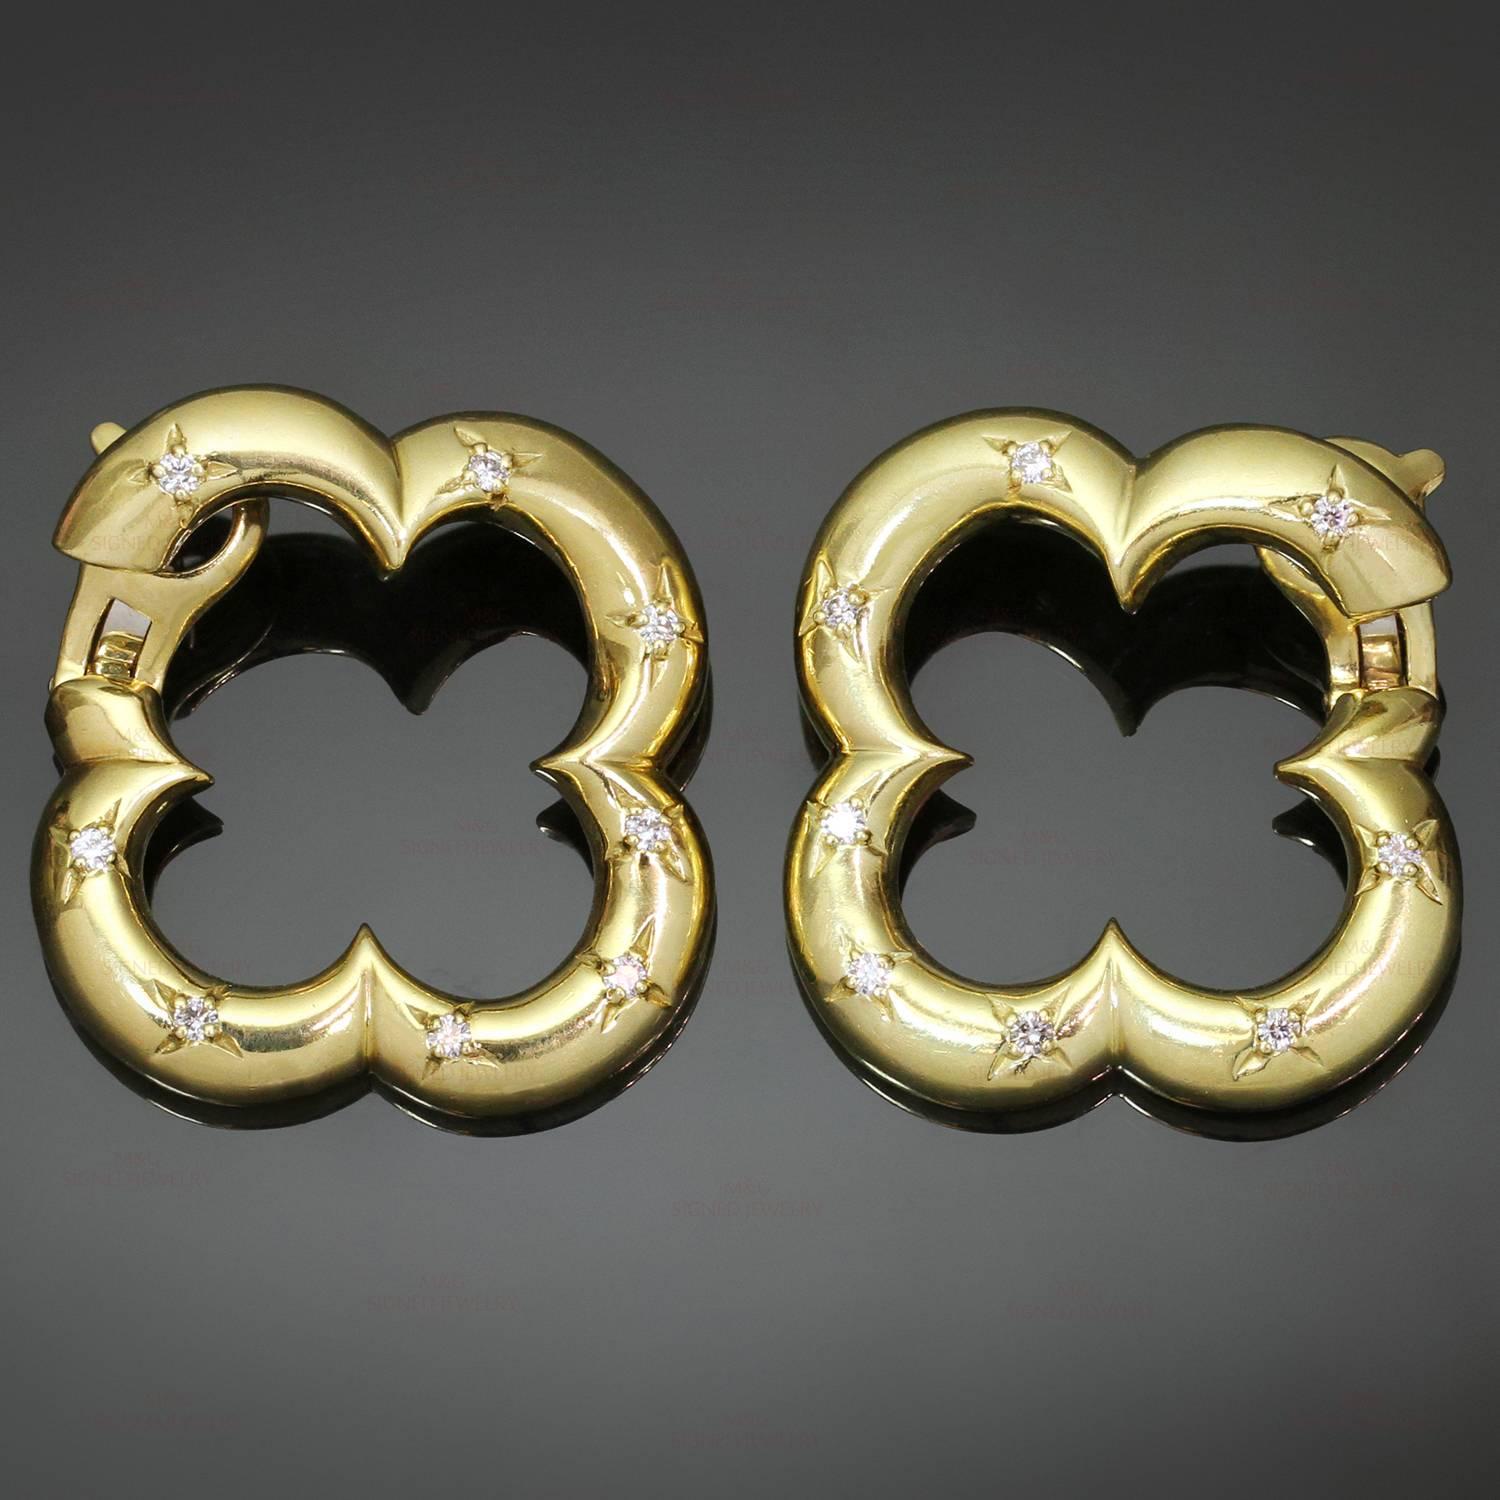 Ces superbes boucles d'oreilles à levier de la collection Brilliante de Van Cleef & Arpels sont réalisées en or jaune 18 carats et rehaussées de 16 diamants taille brillant d'une valeur estimée à 0,56 carat. Un design iconique et festif inspiré du